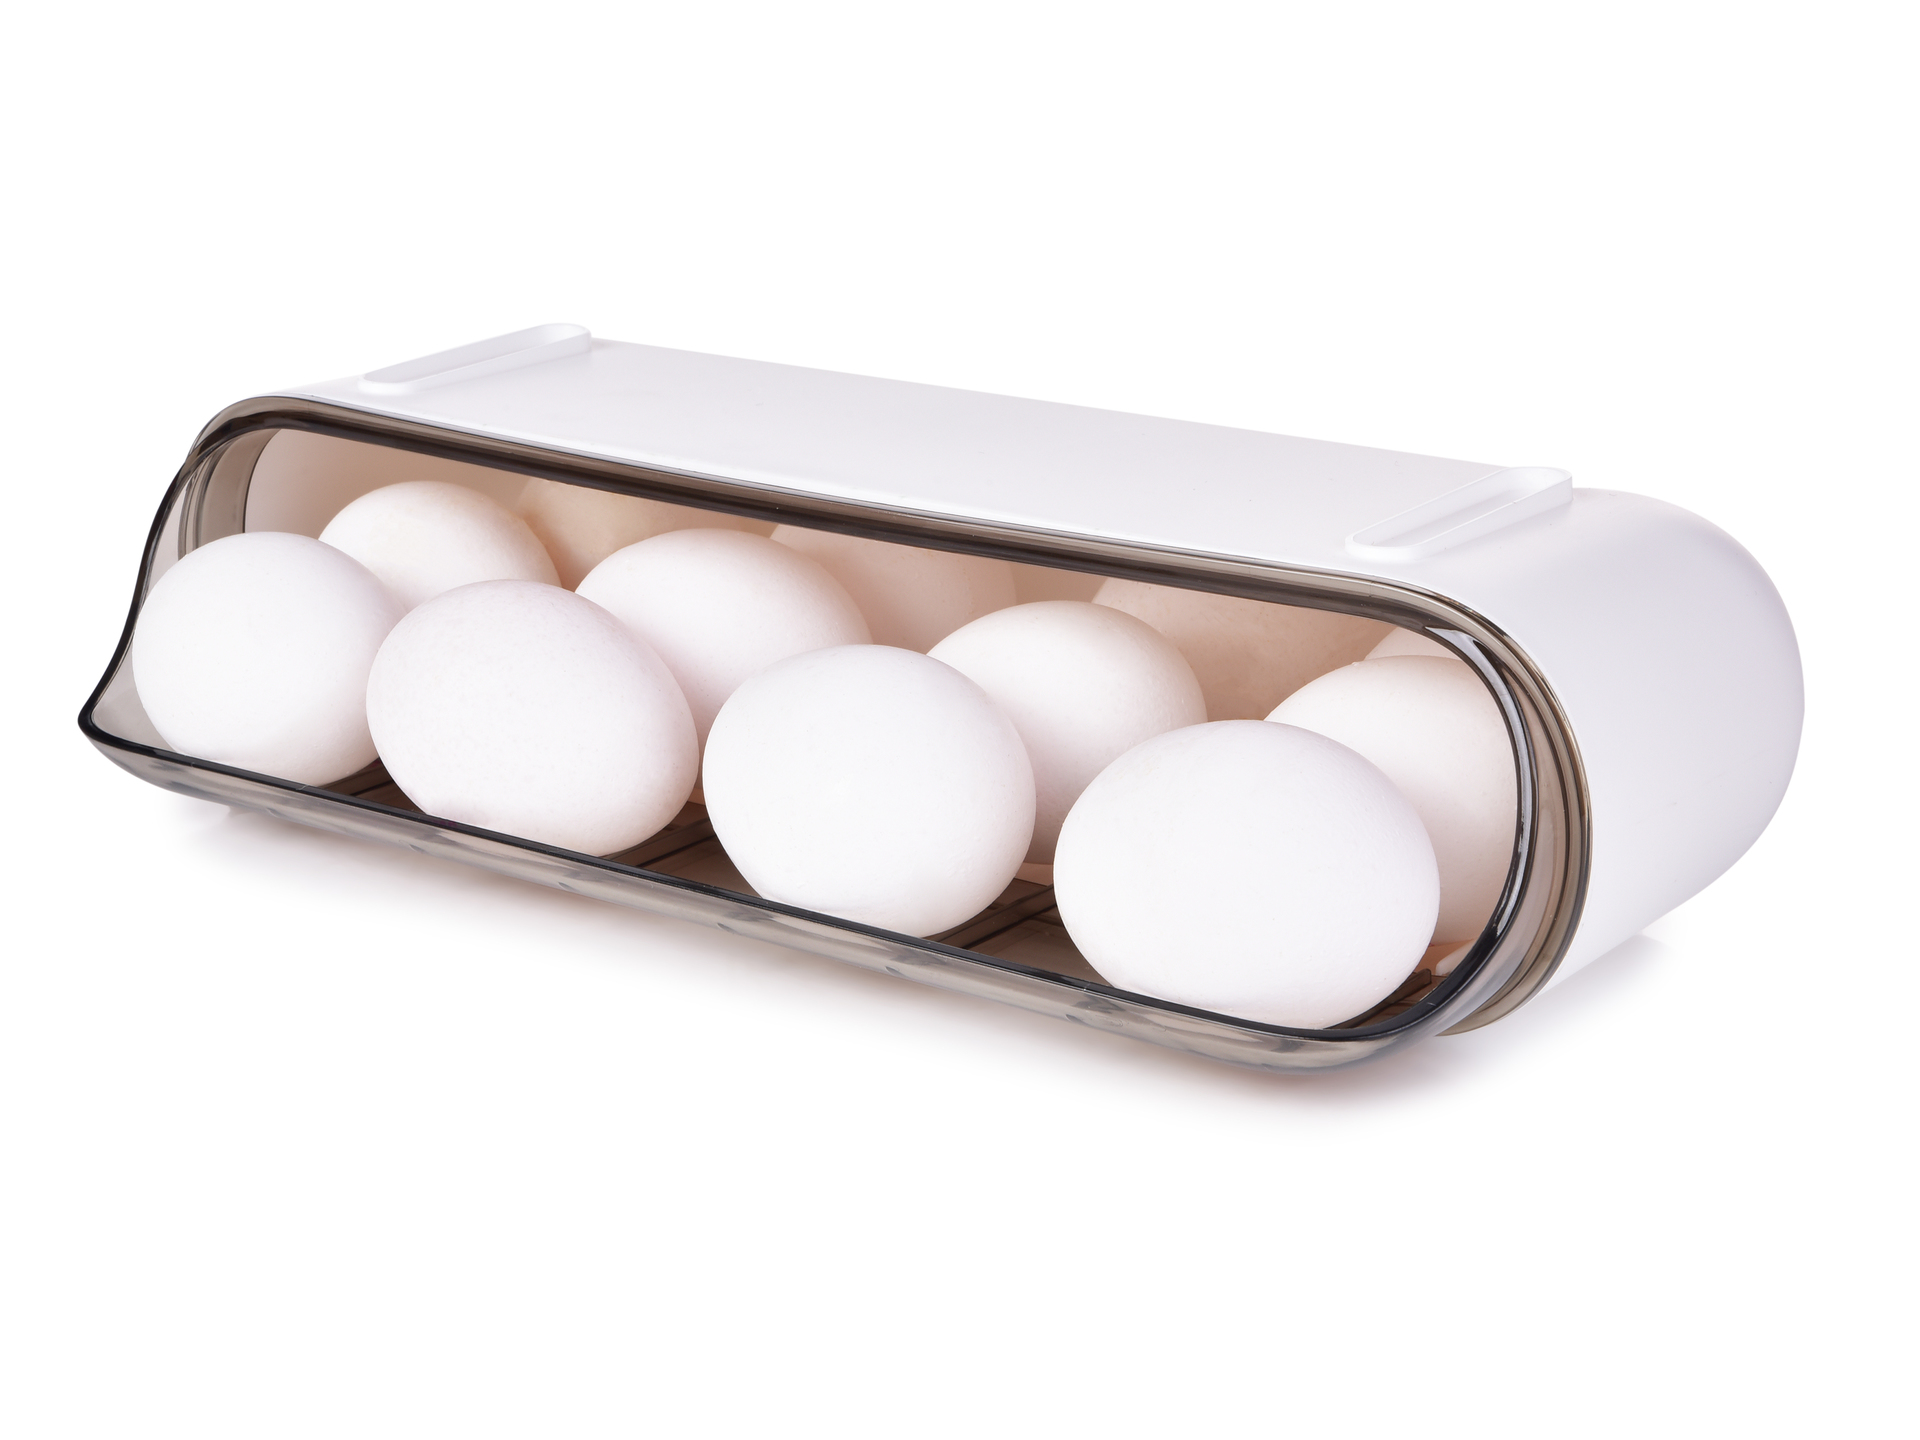 Samospádový box na vajíčka VEJCOPÁD, na 12 ks vajec, stohovatelný